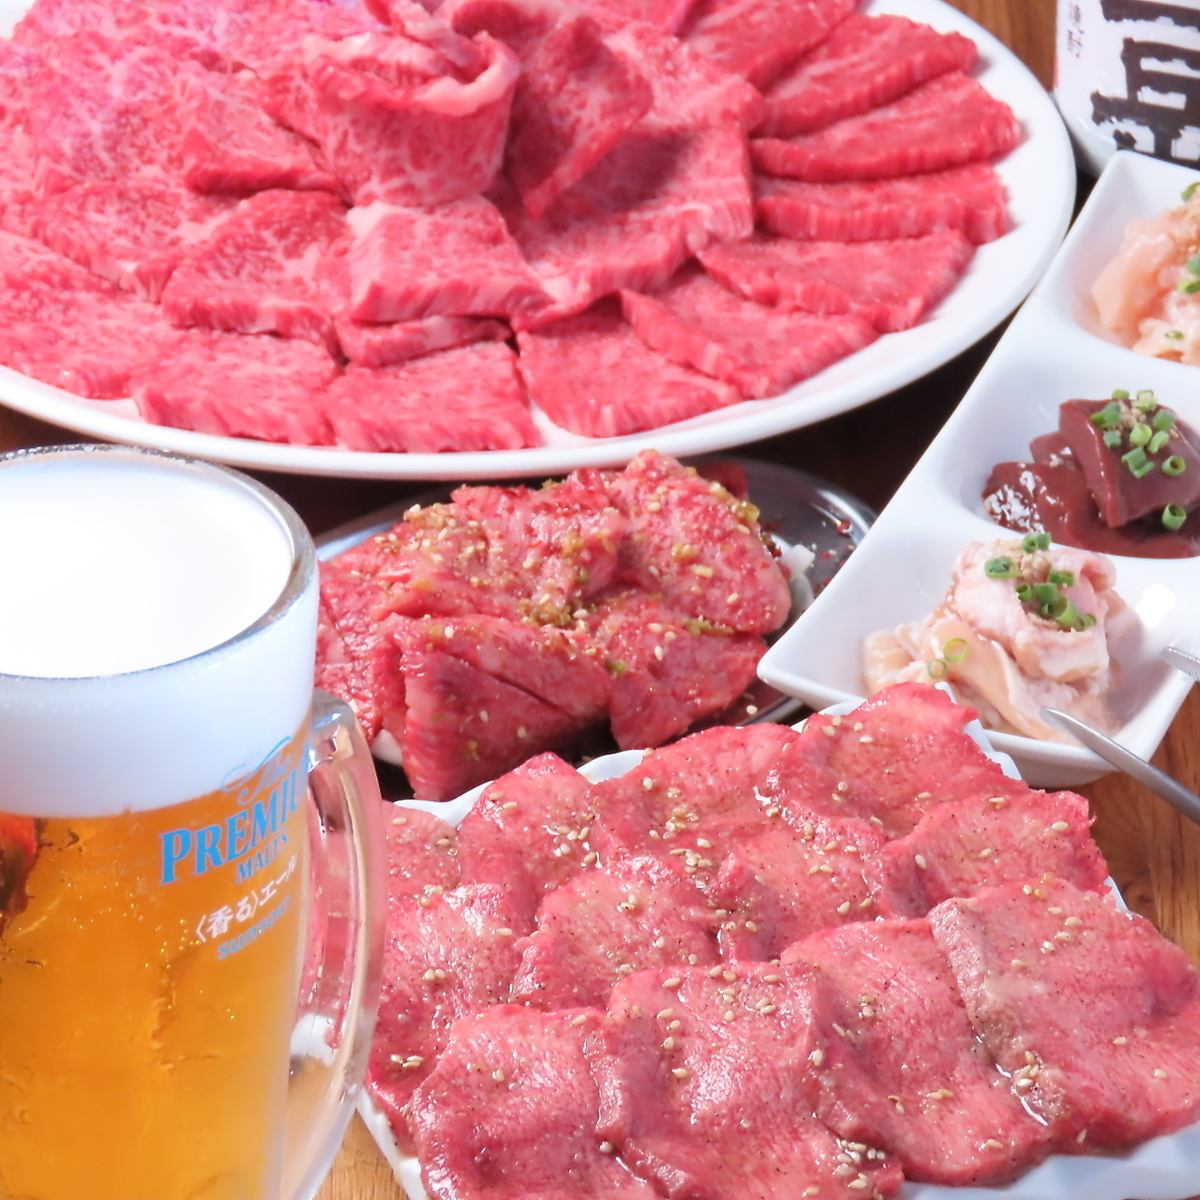 您可以以合理的價格享用優質肉和熟成肉。